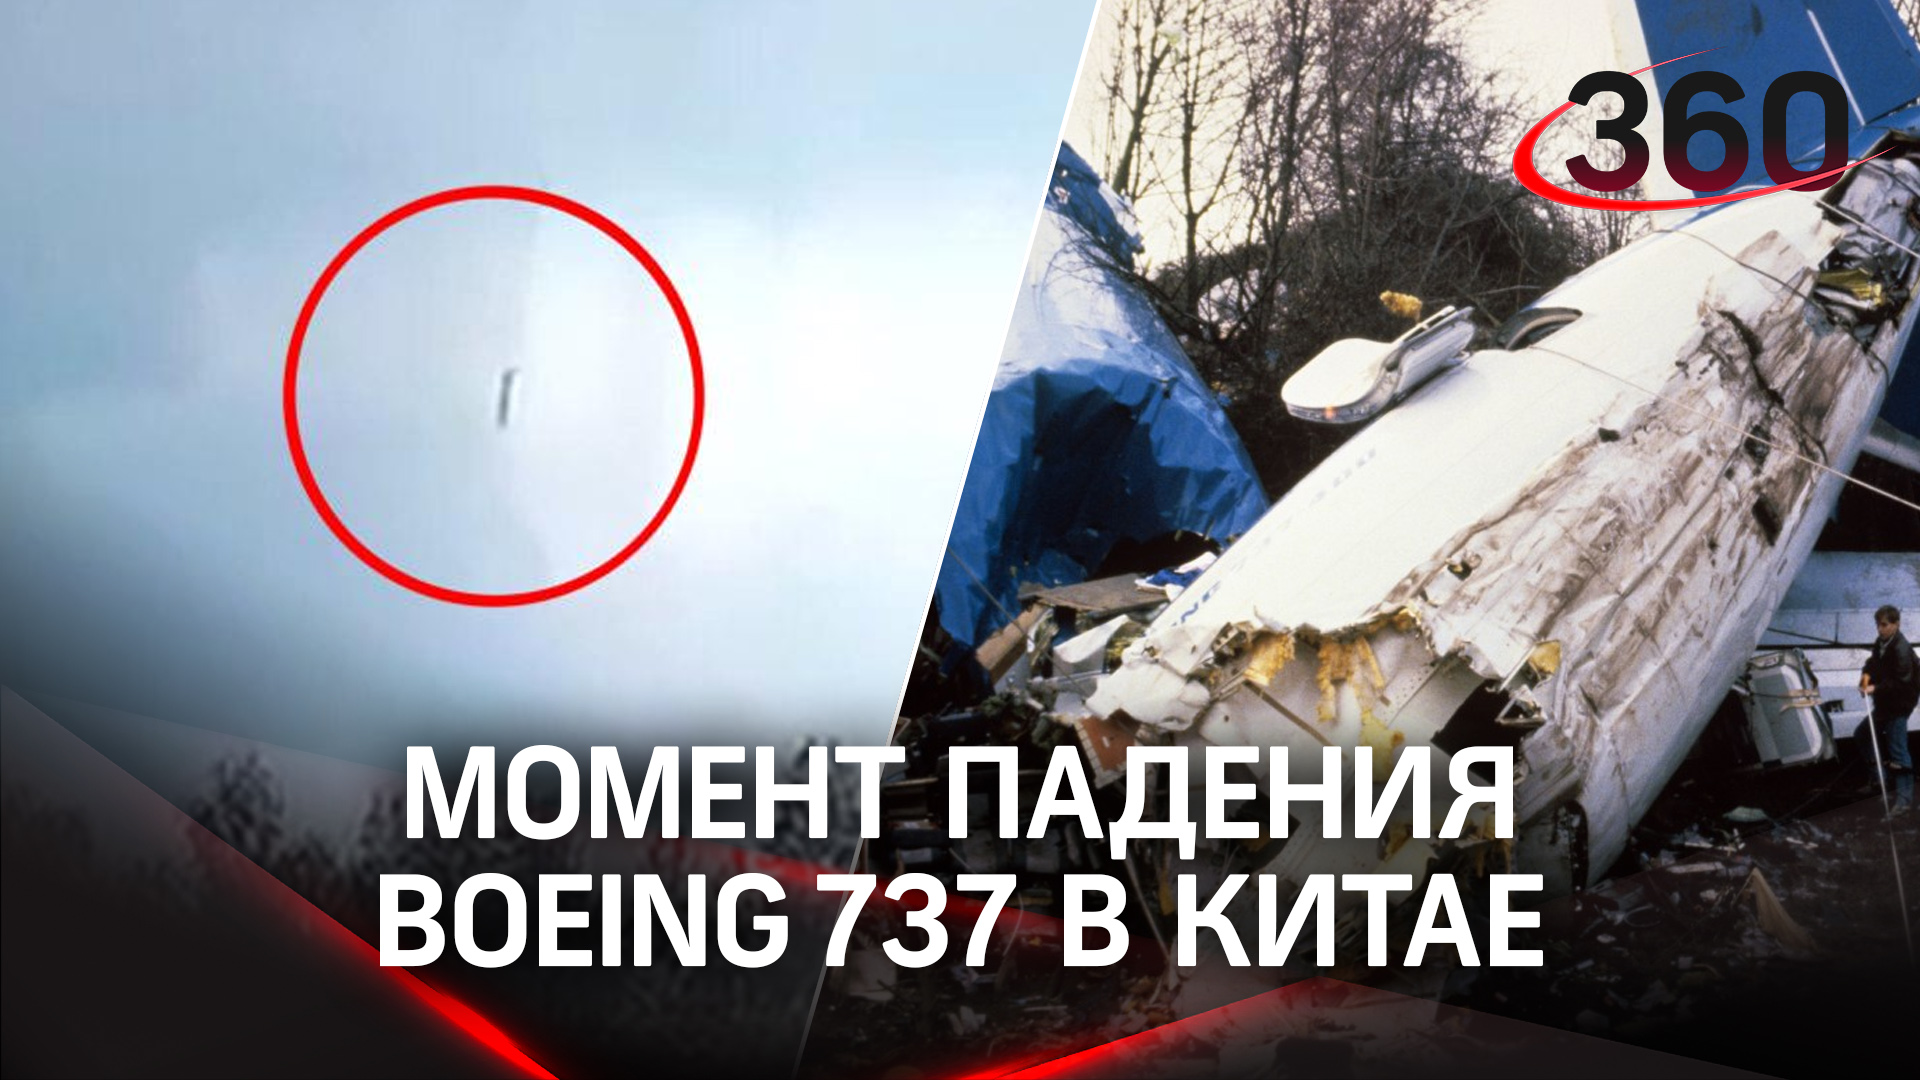 Момент падения Boeing в Китае попал на видео. Что известно о россиянах на борту?